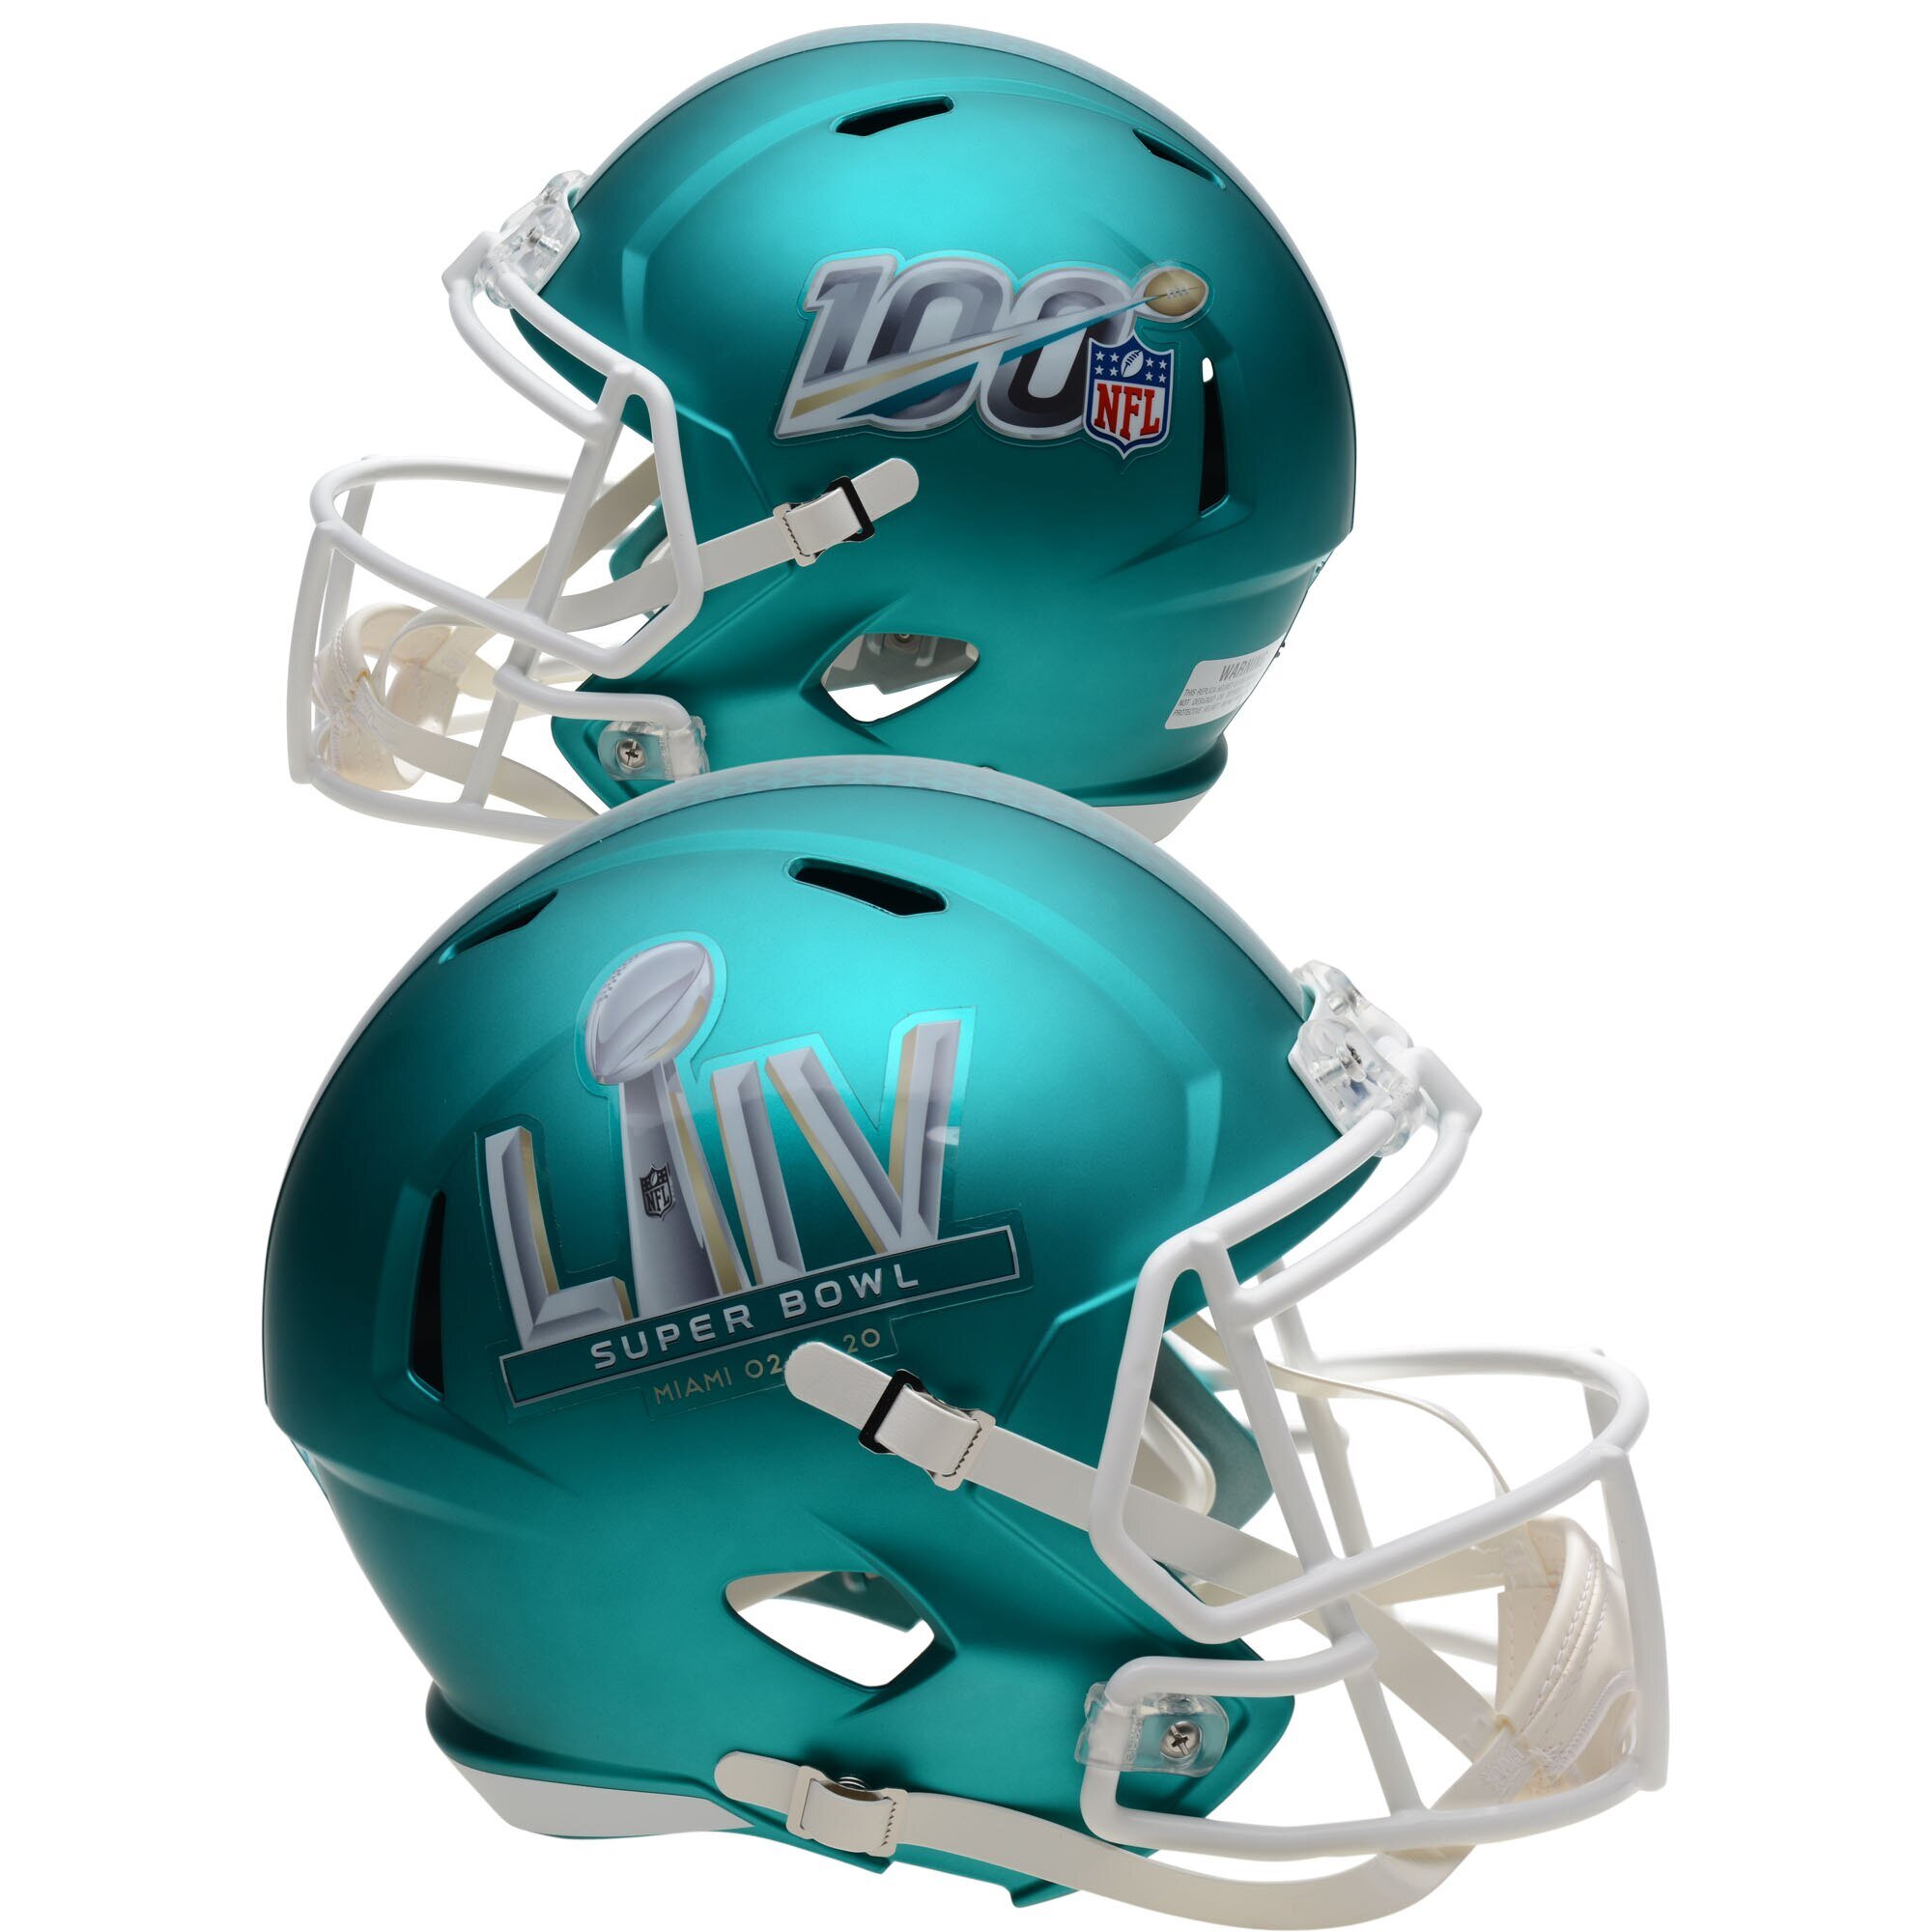 New Riddell Super Bowl LIV 54 Speed Mini Football Helmet Miami 2020